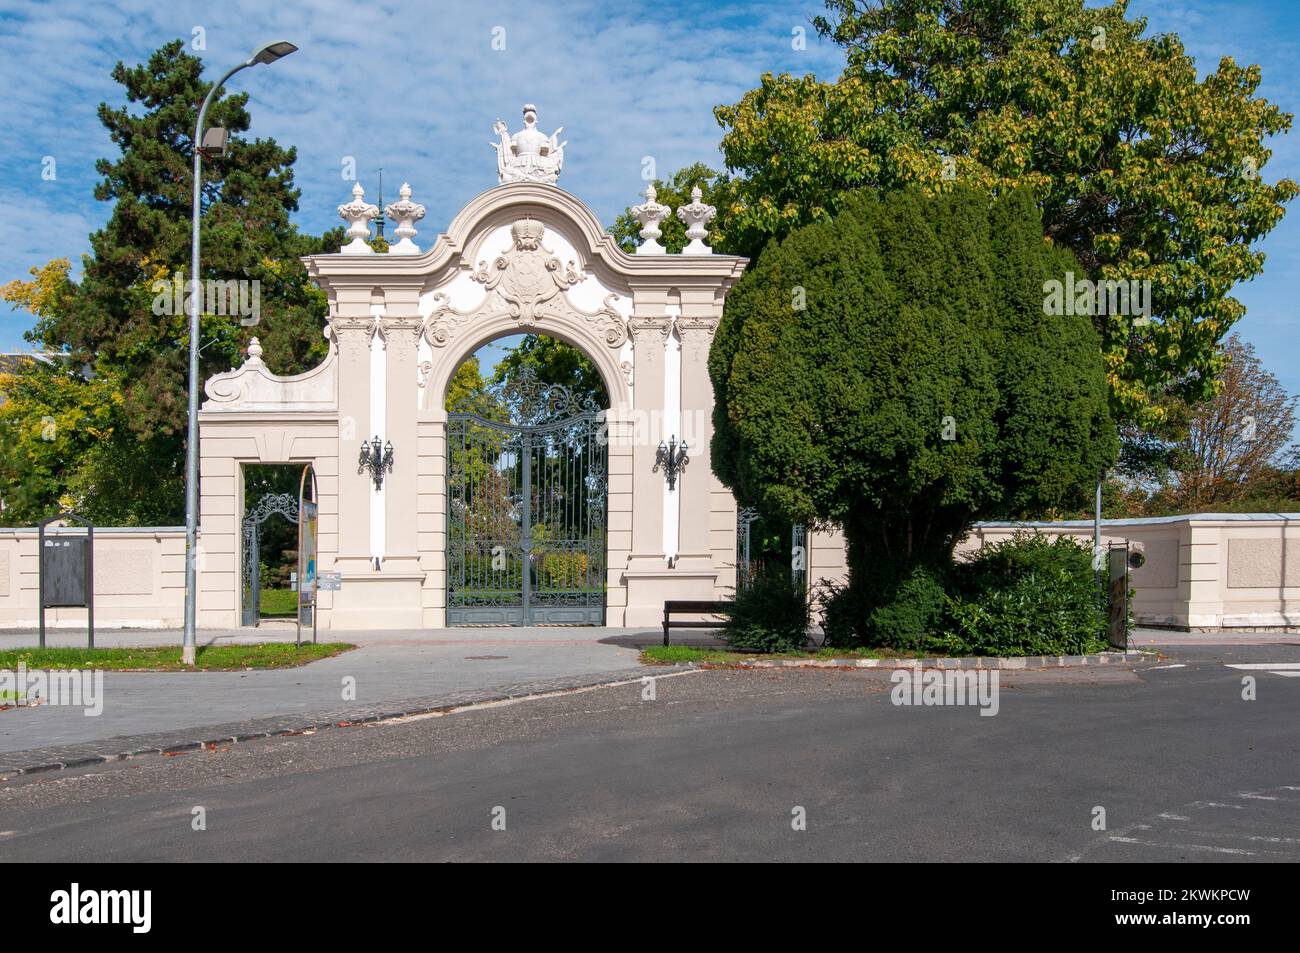 La Puerta de Entrada al Palacio Festetics es un palacio barroco situado en la ciudad de Keszthely, Zala, Hungría. El edificio alberga ahora el Palacio Helikon Foto de stock